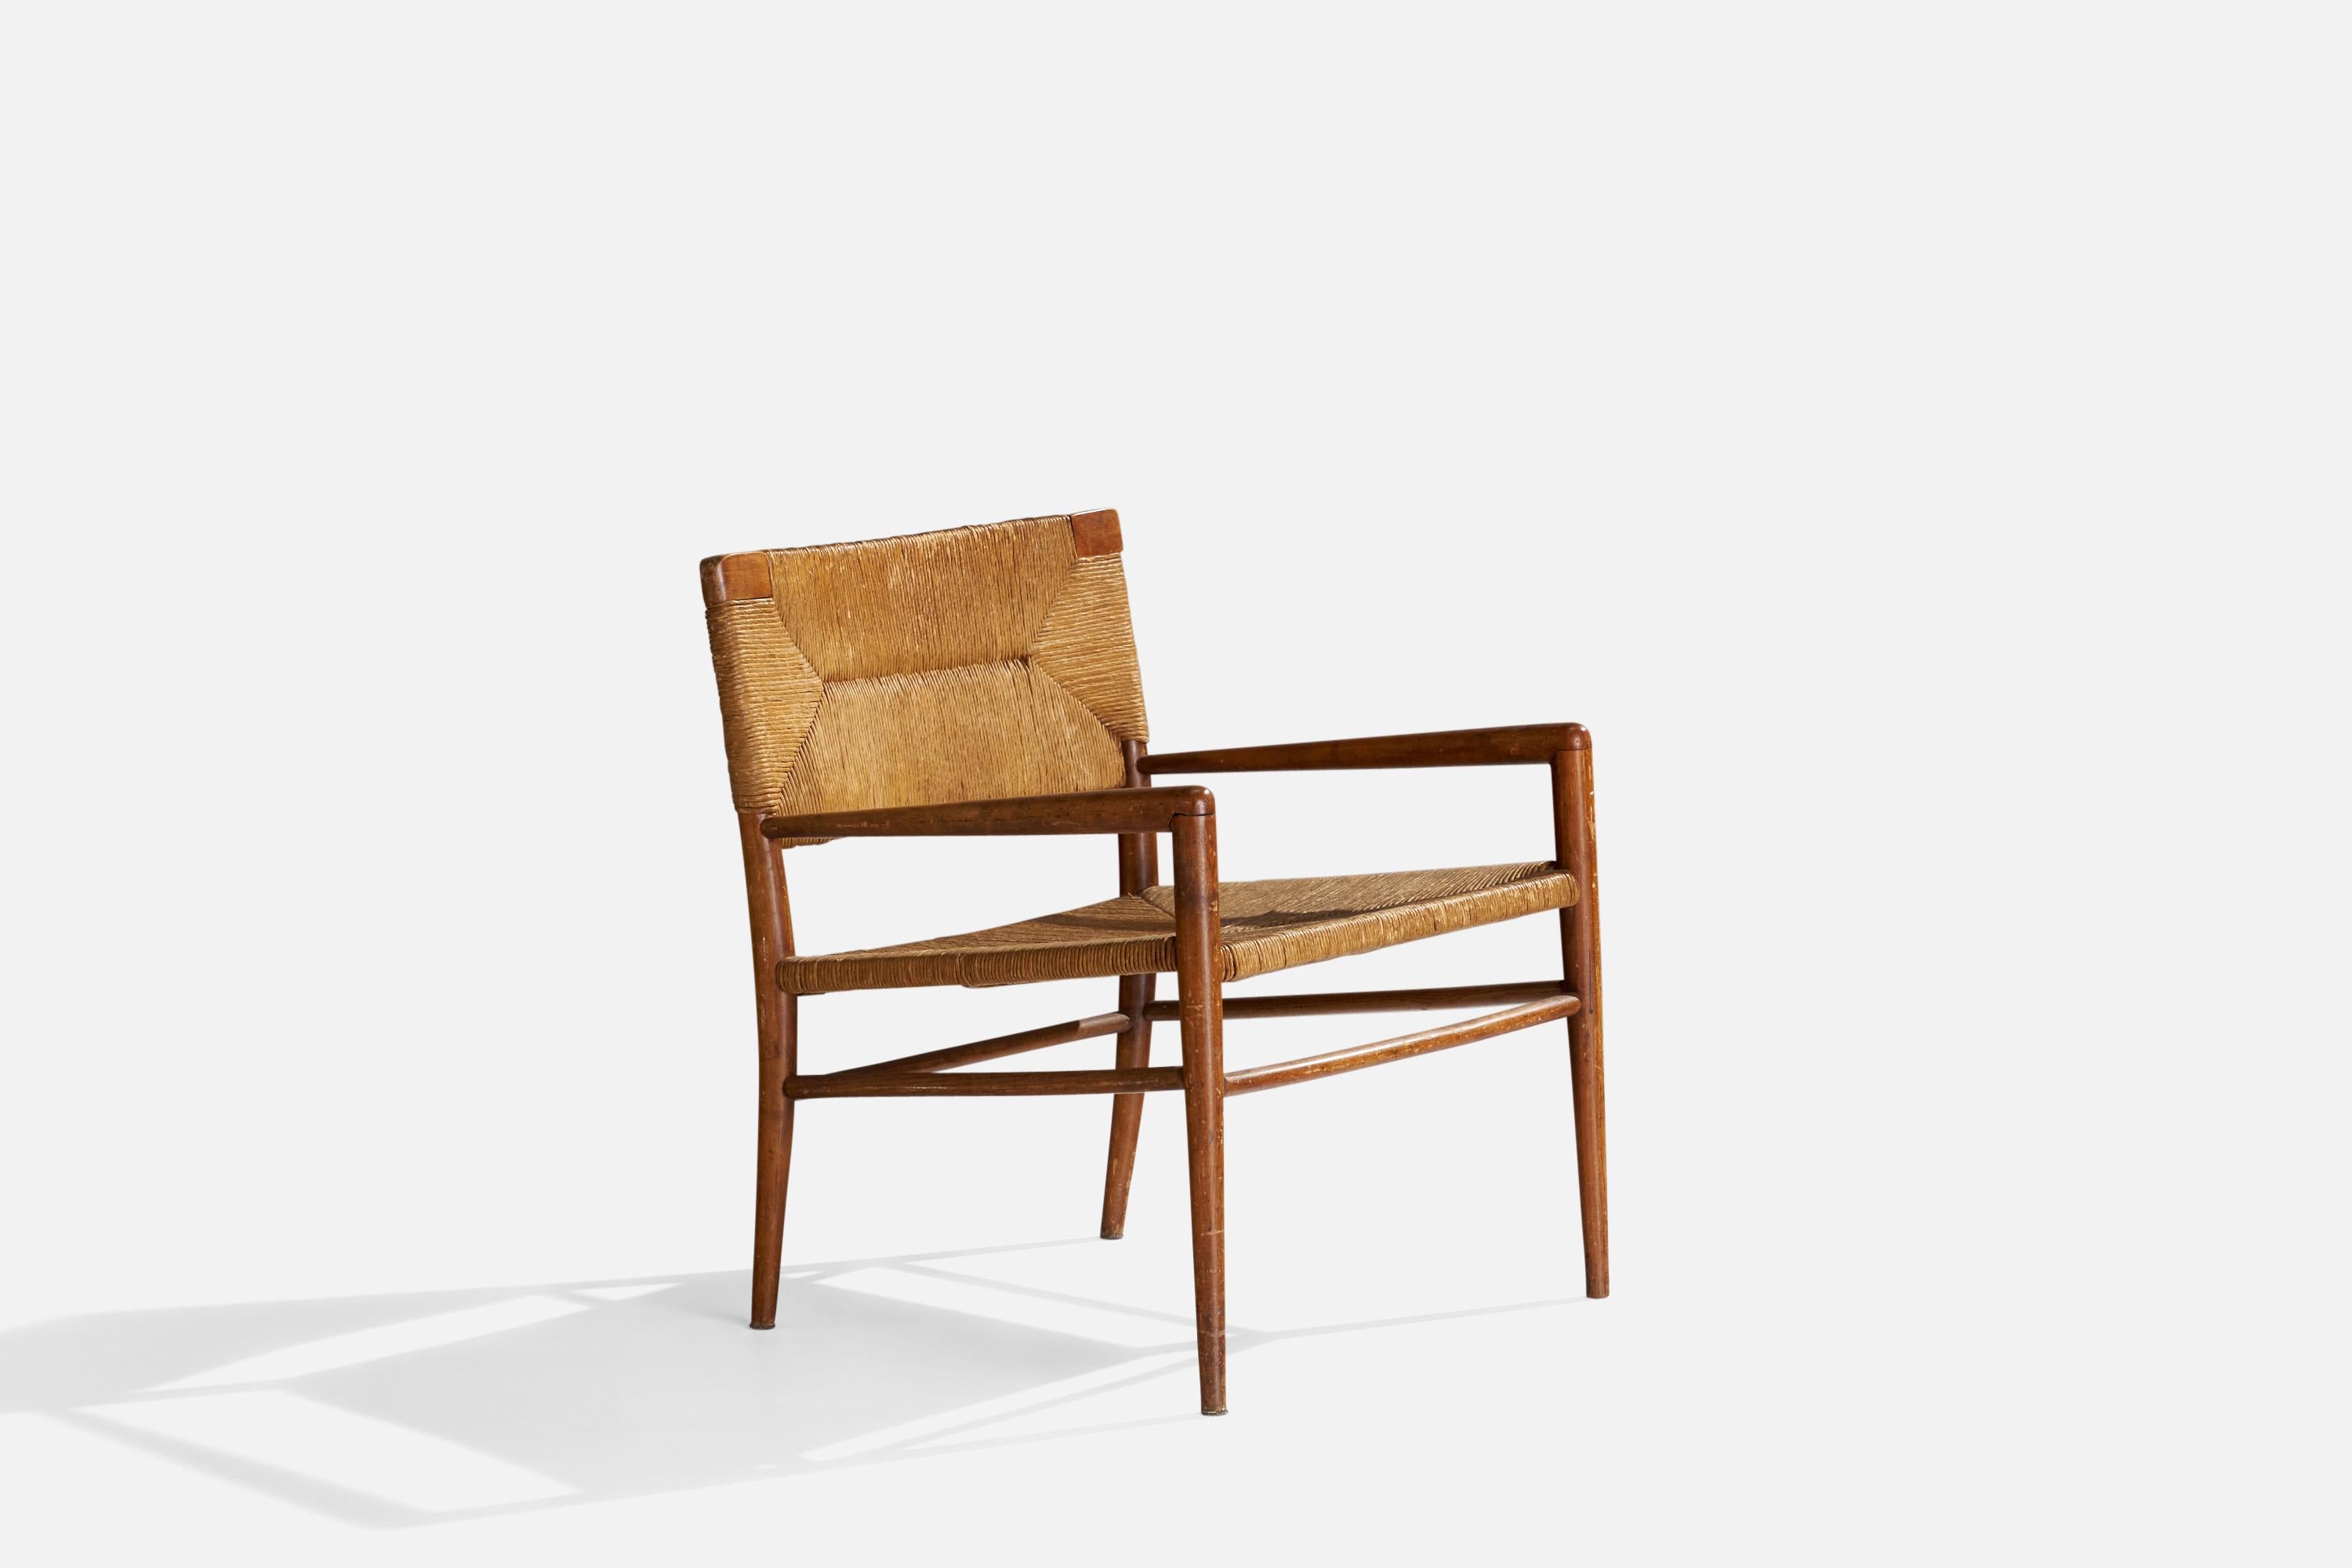 Chaise longue en bois et corde de papier conçue par Mel Smilow et produite par Smilow-Thielle, c. 1955.

Hauteur d'assise 16